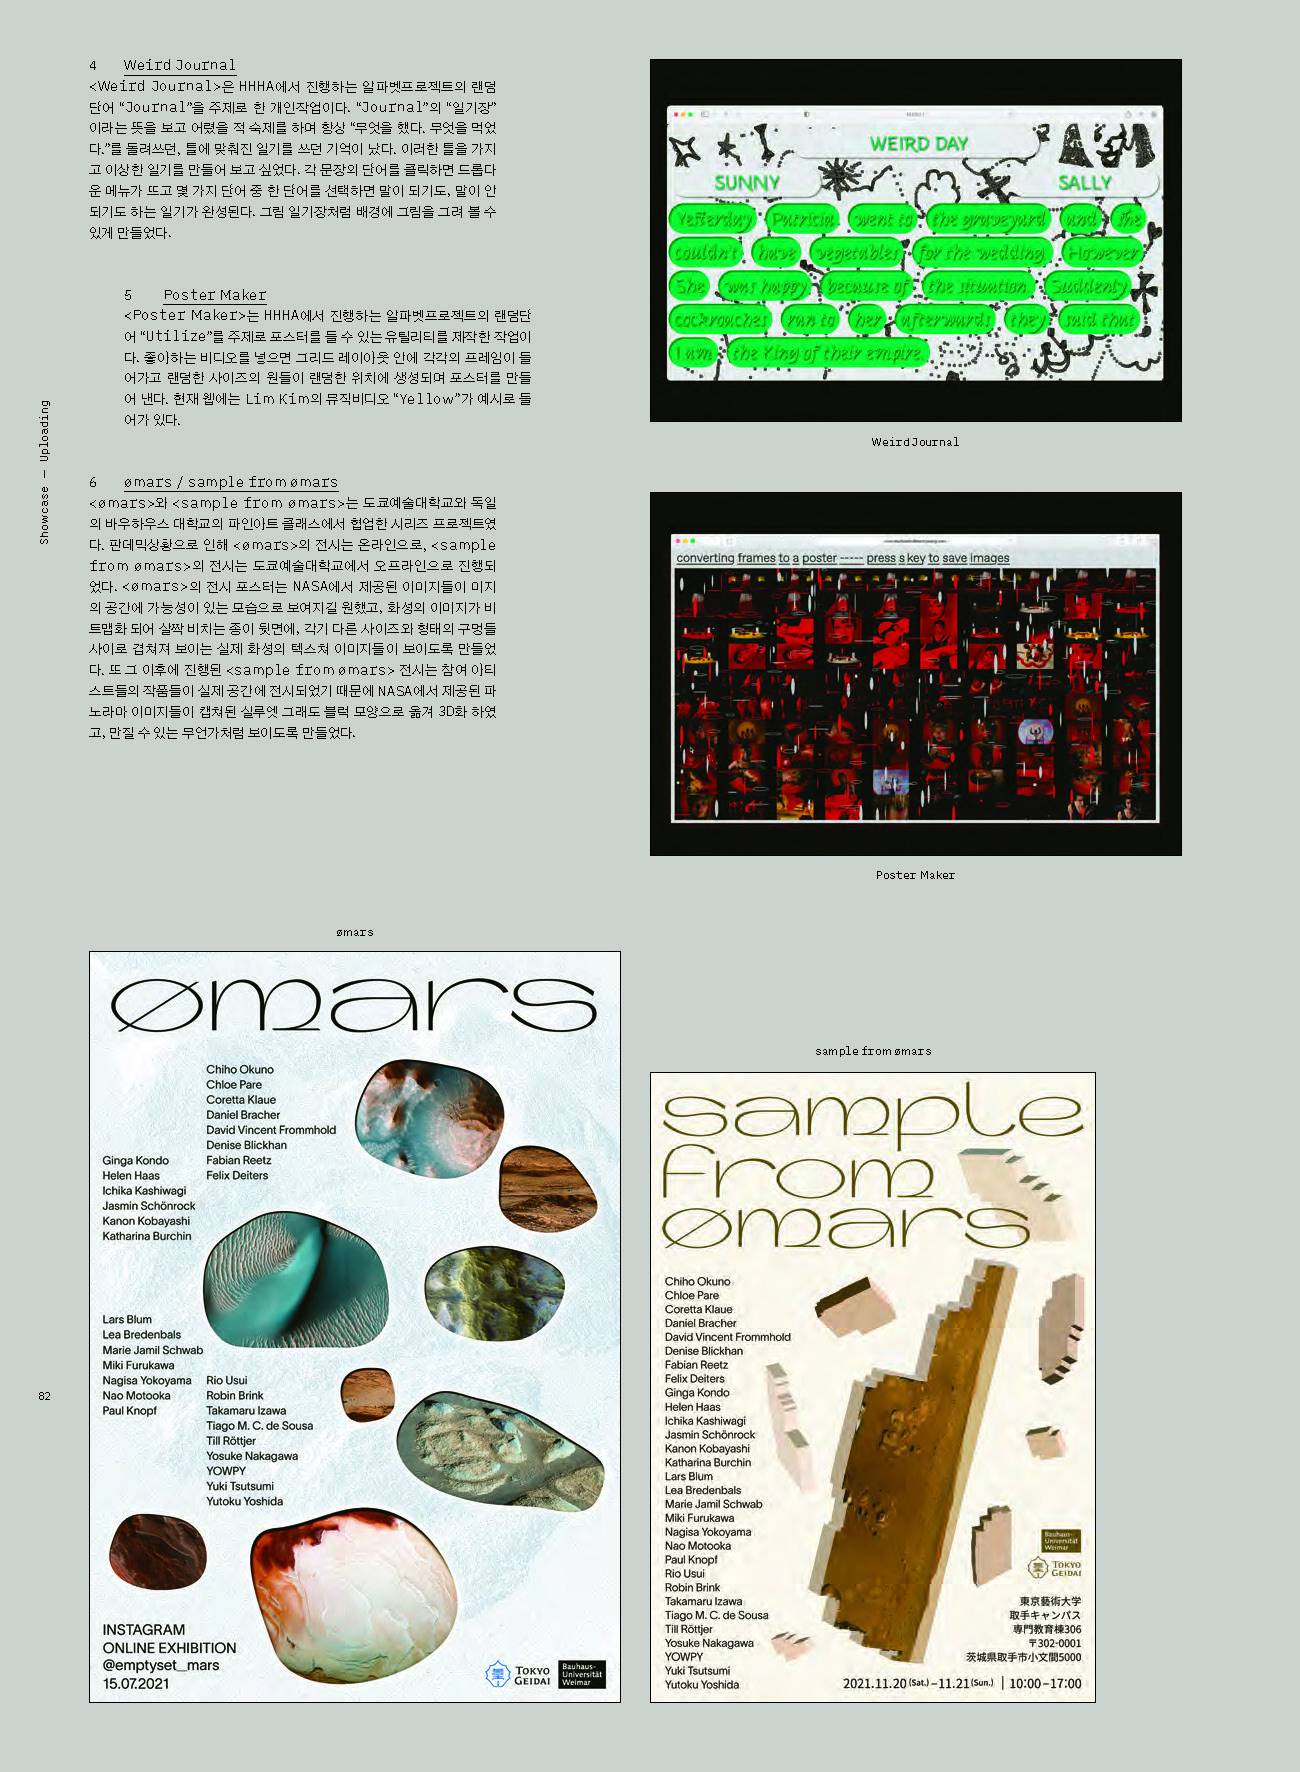 CA Design Magazine feature